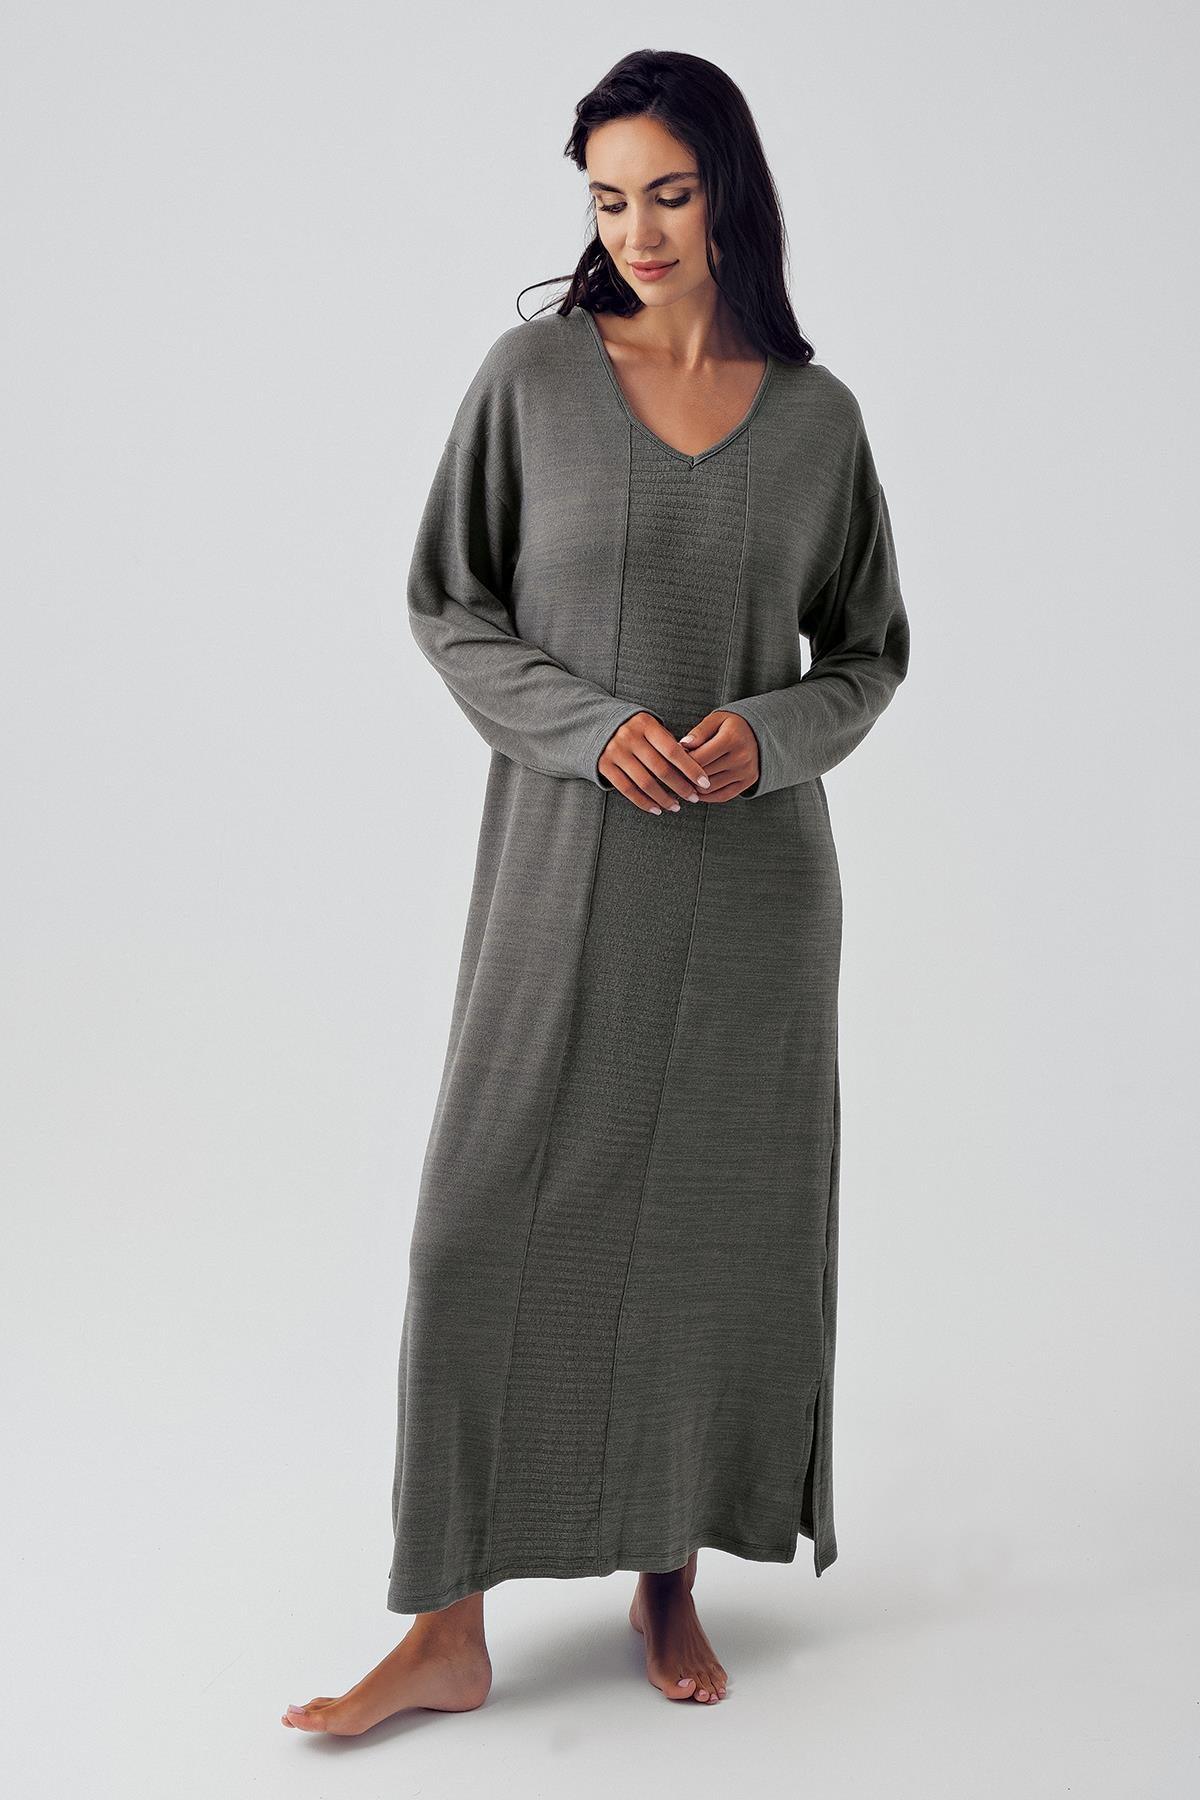 Uzun Kollu Yumuşak Dokulu Triko Elbise 15108 - Artış Collection